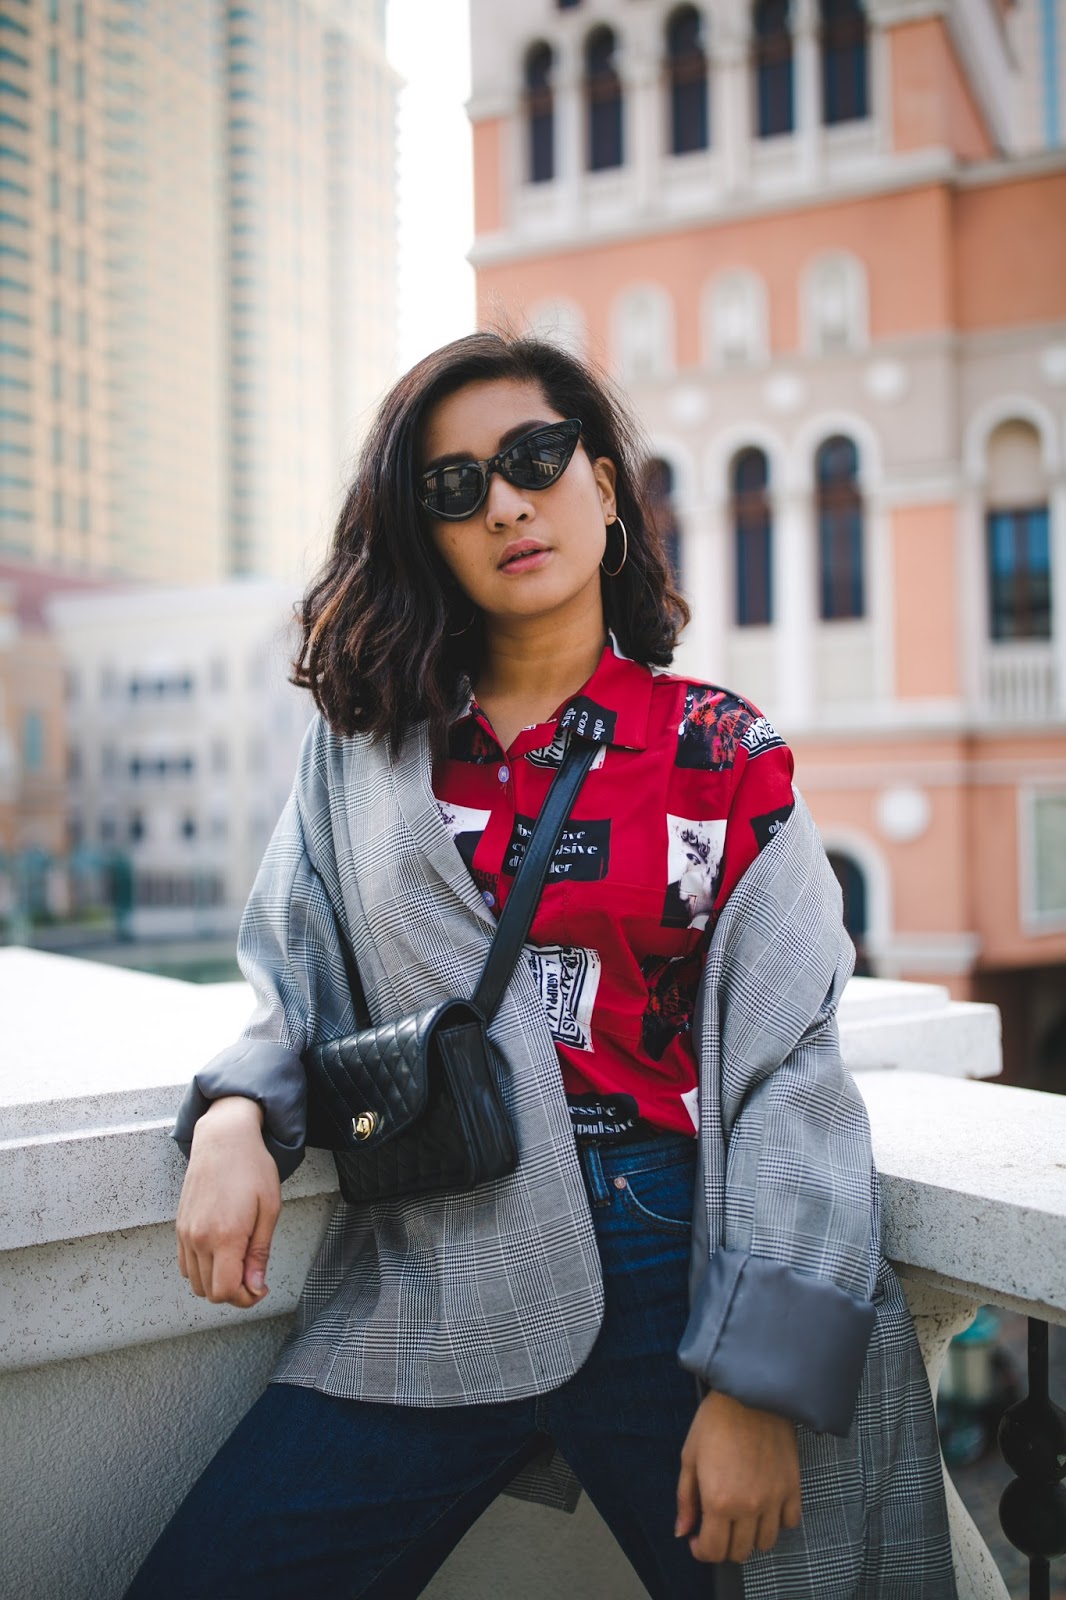 macau fashion blogger wearing plaid and retro print